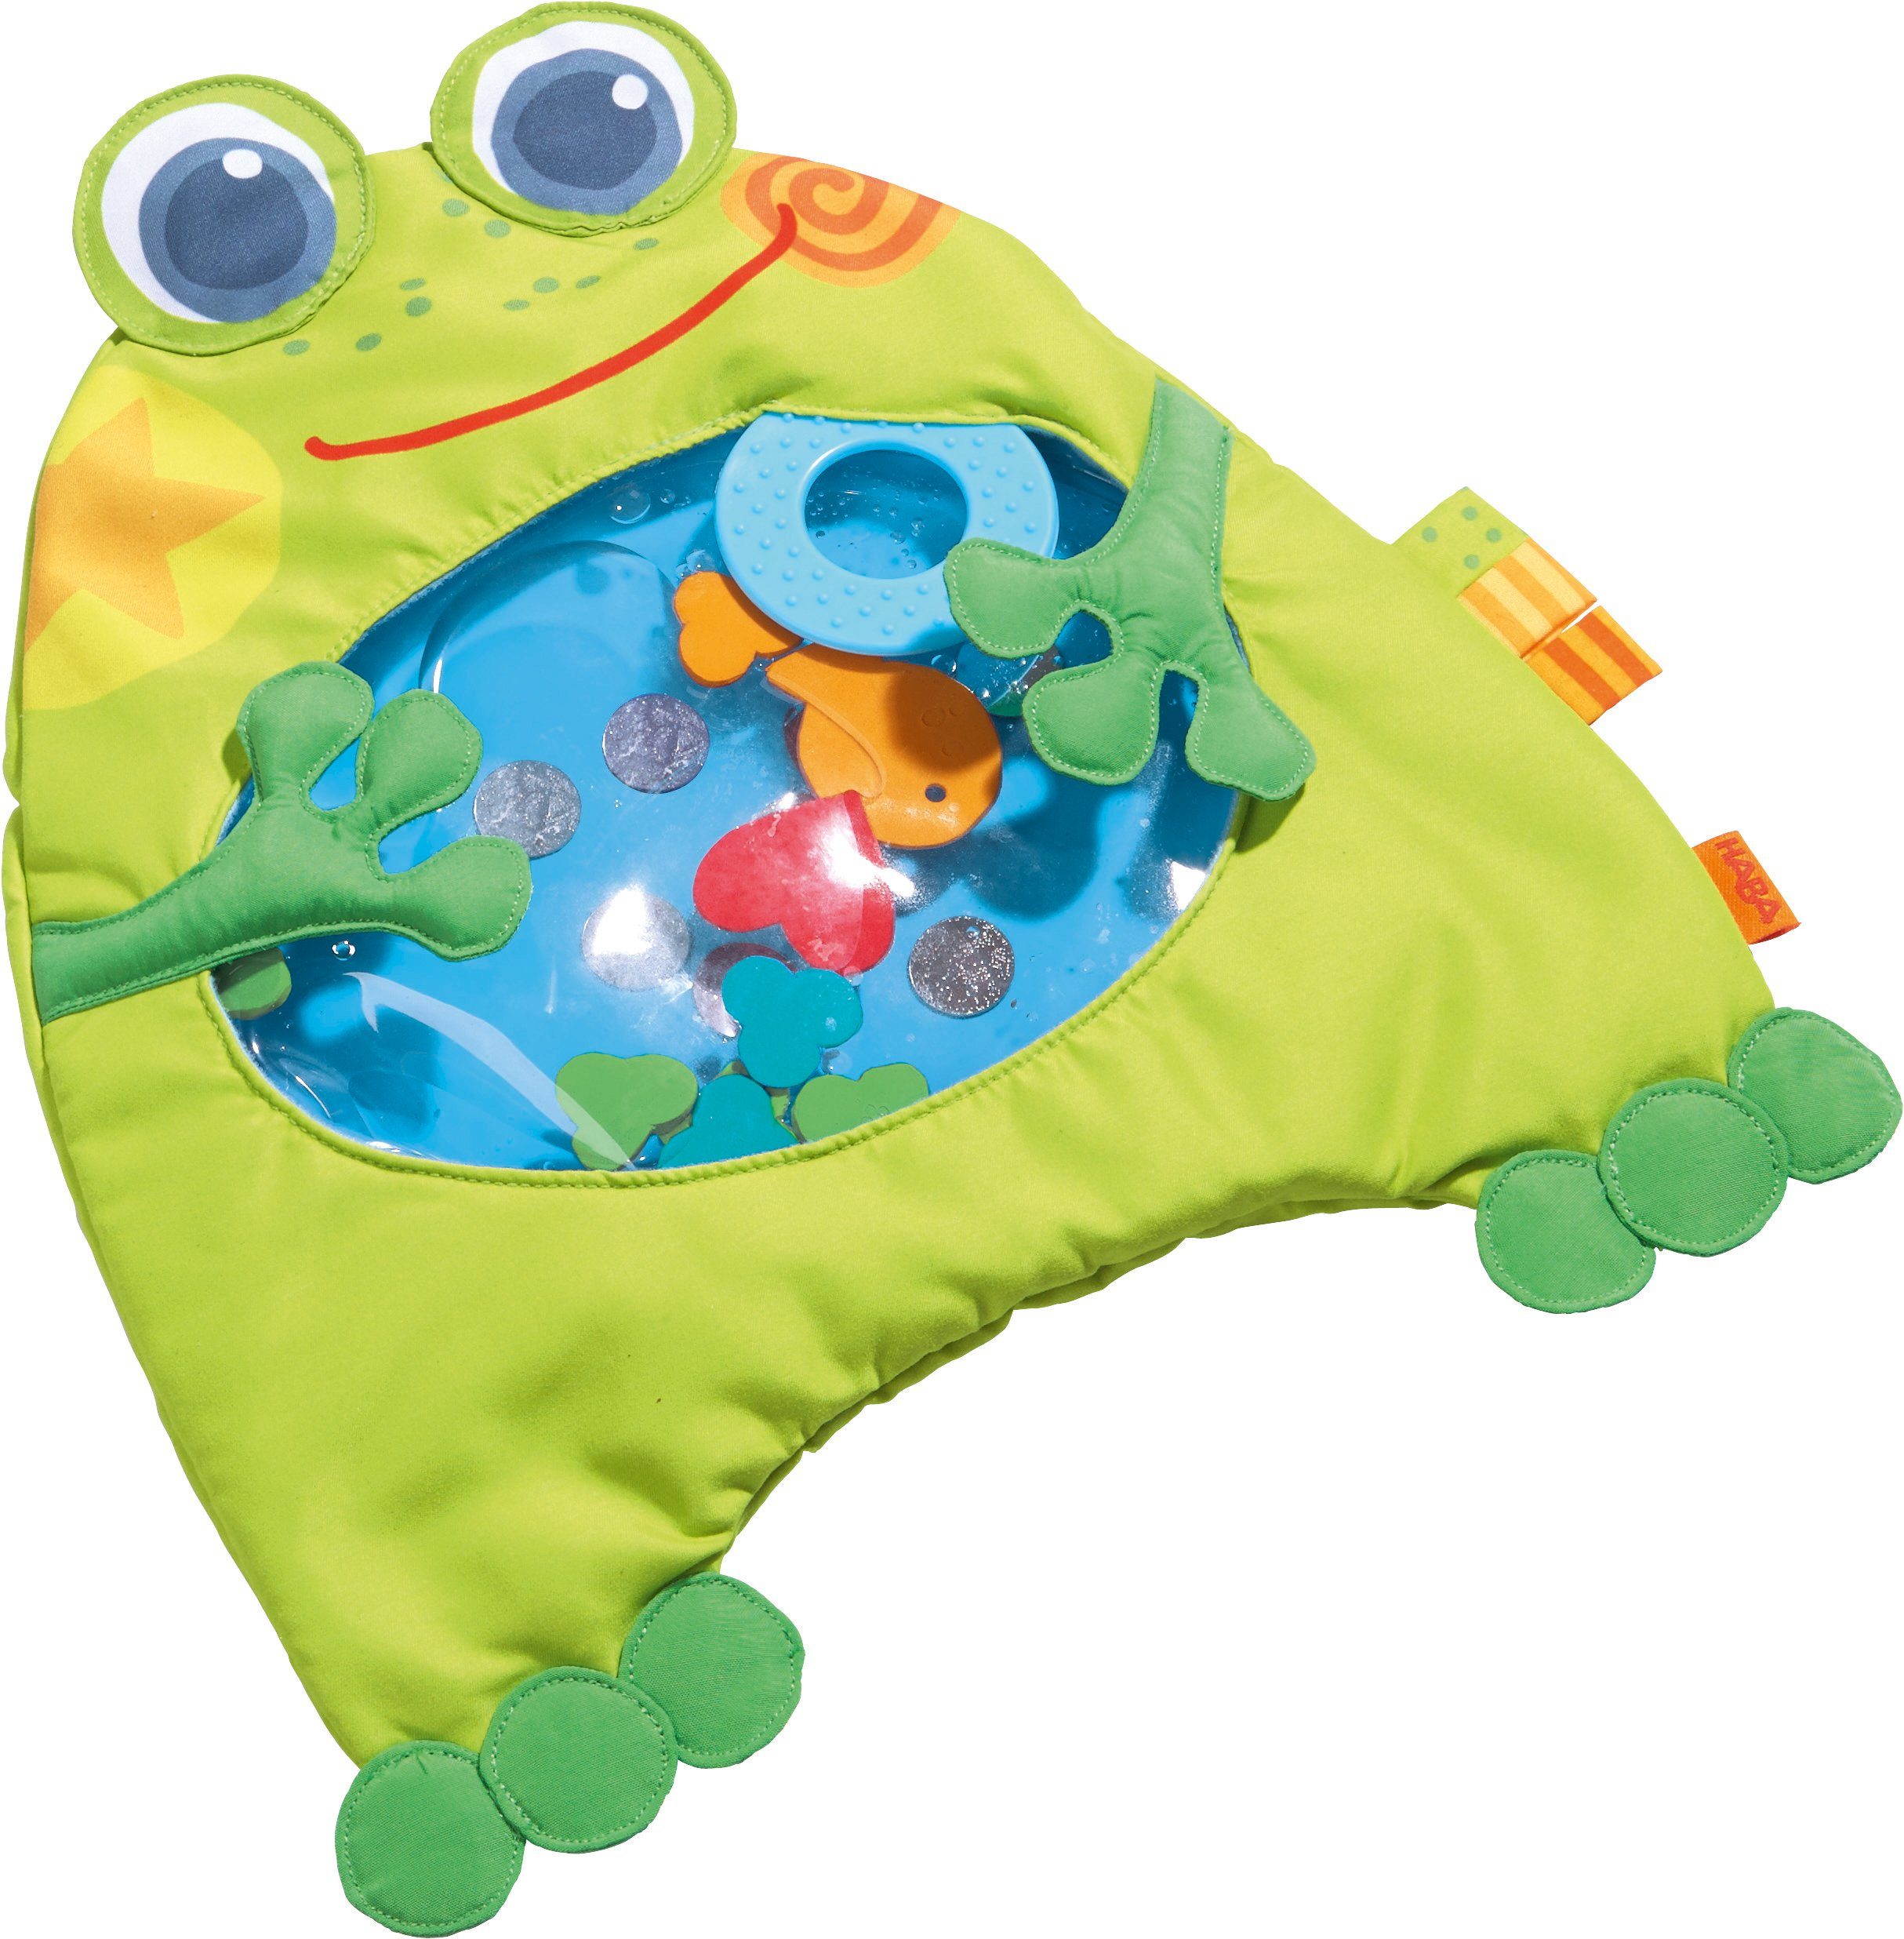 Haba Spielmatte »Kleiner Frosch« online kaufen | OTTO